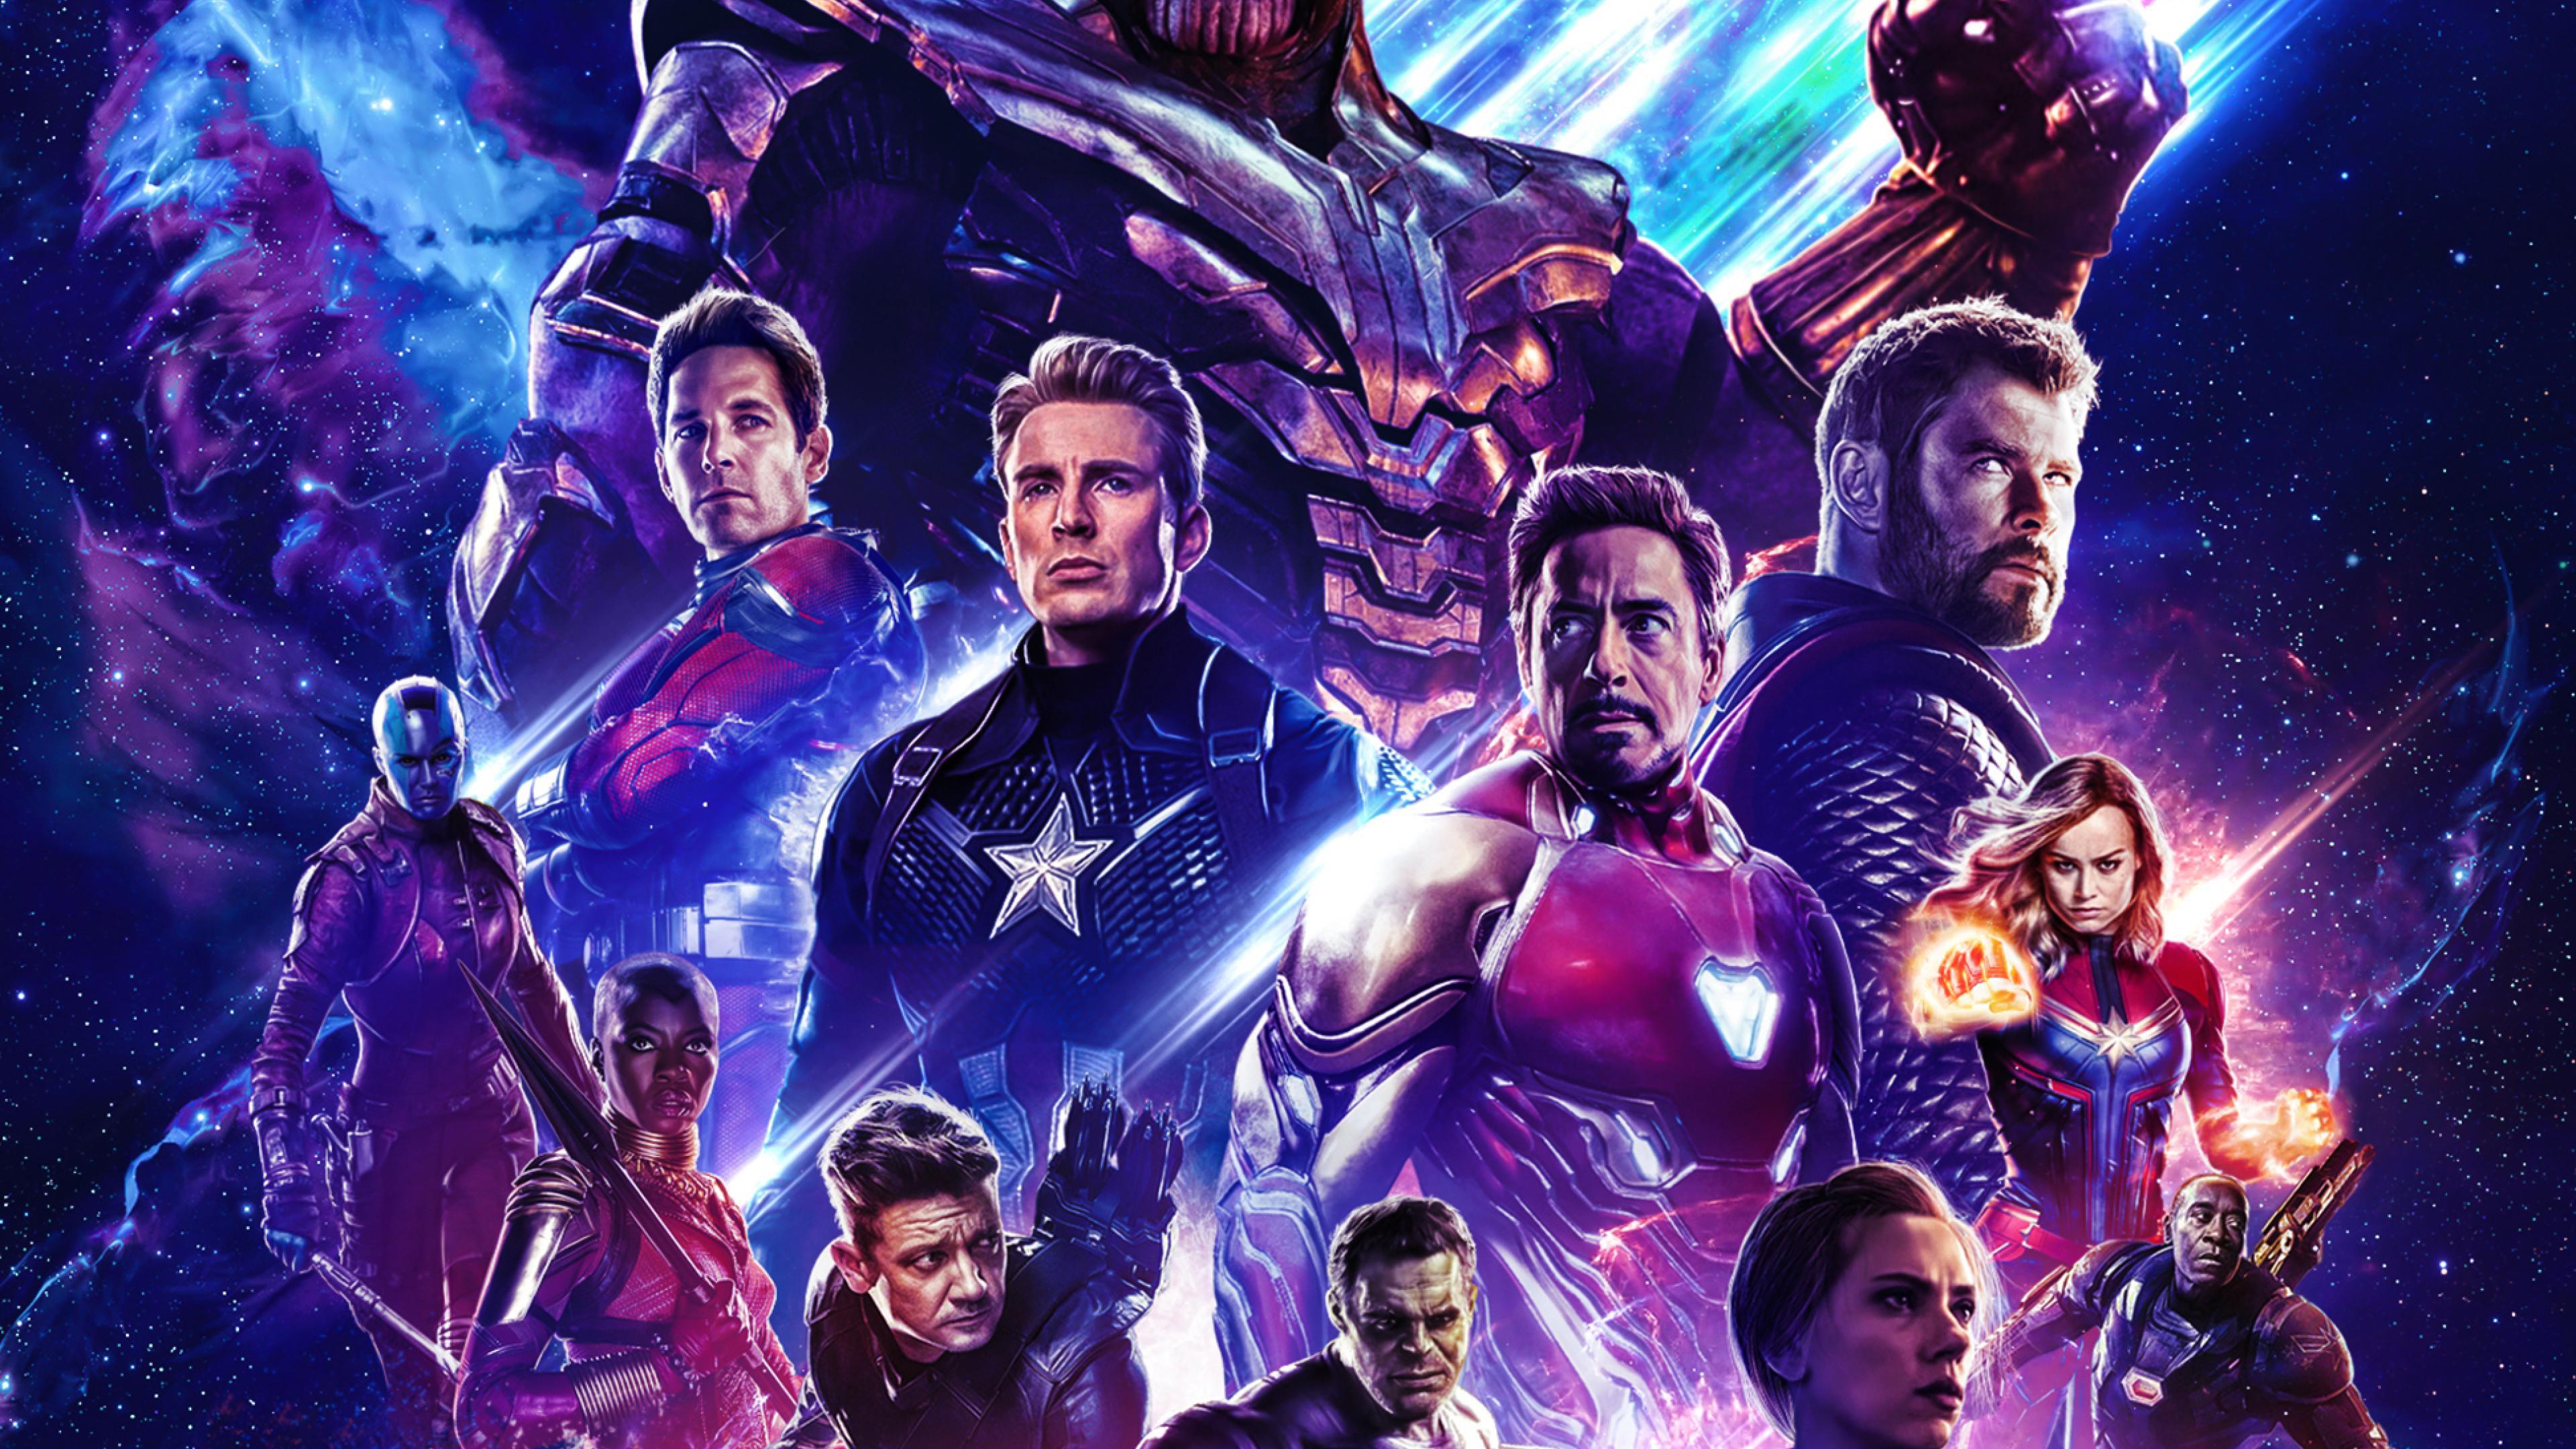 Marvel Apple 2019 Avengers wallpaperAvengers